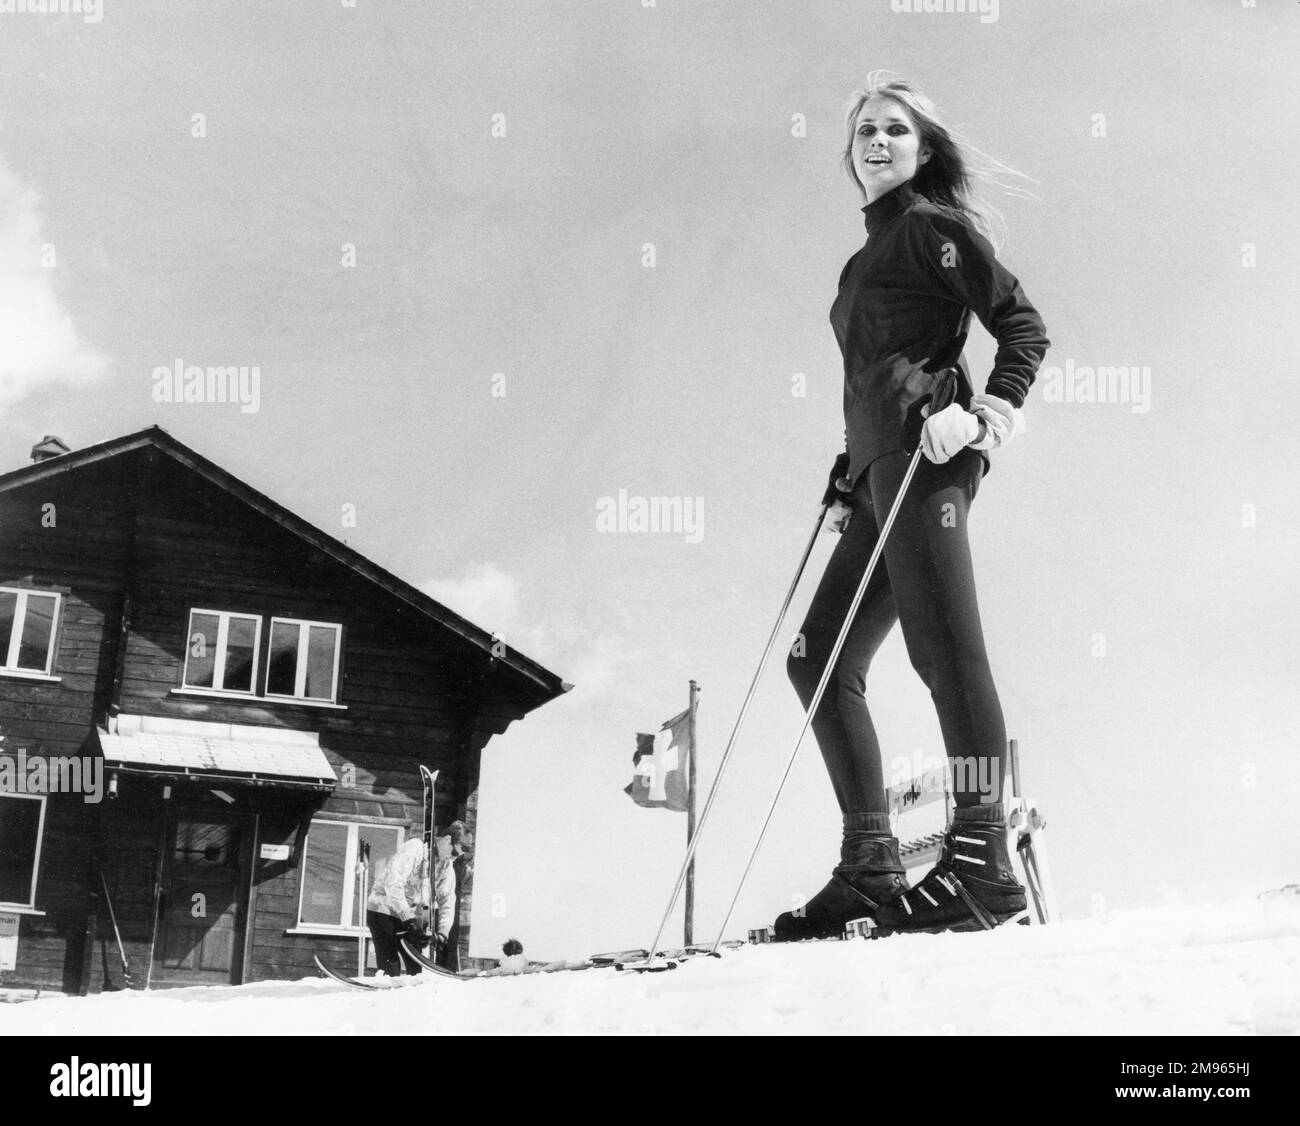 Un modello biondo sugli sci, posto all'esterno di uno chalet. Foto Stock